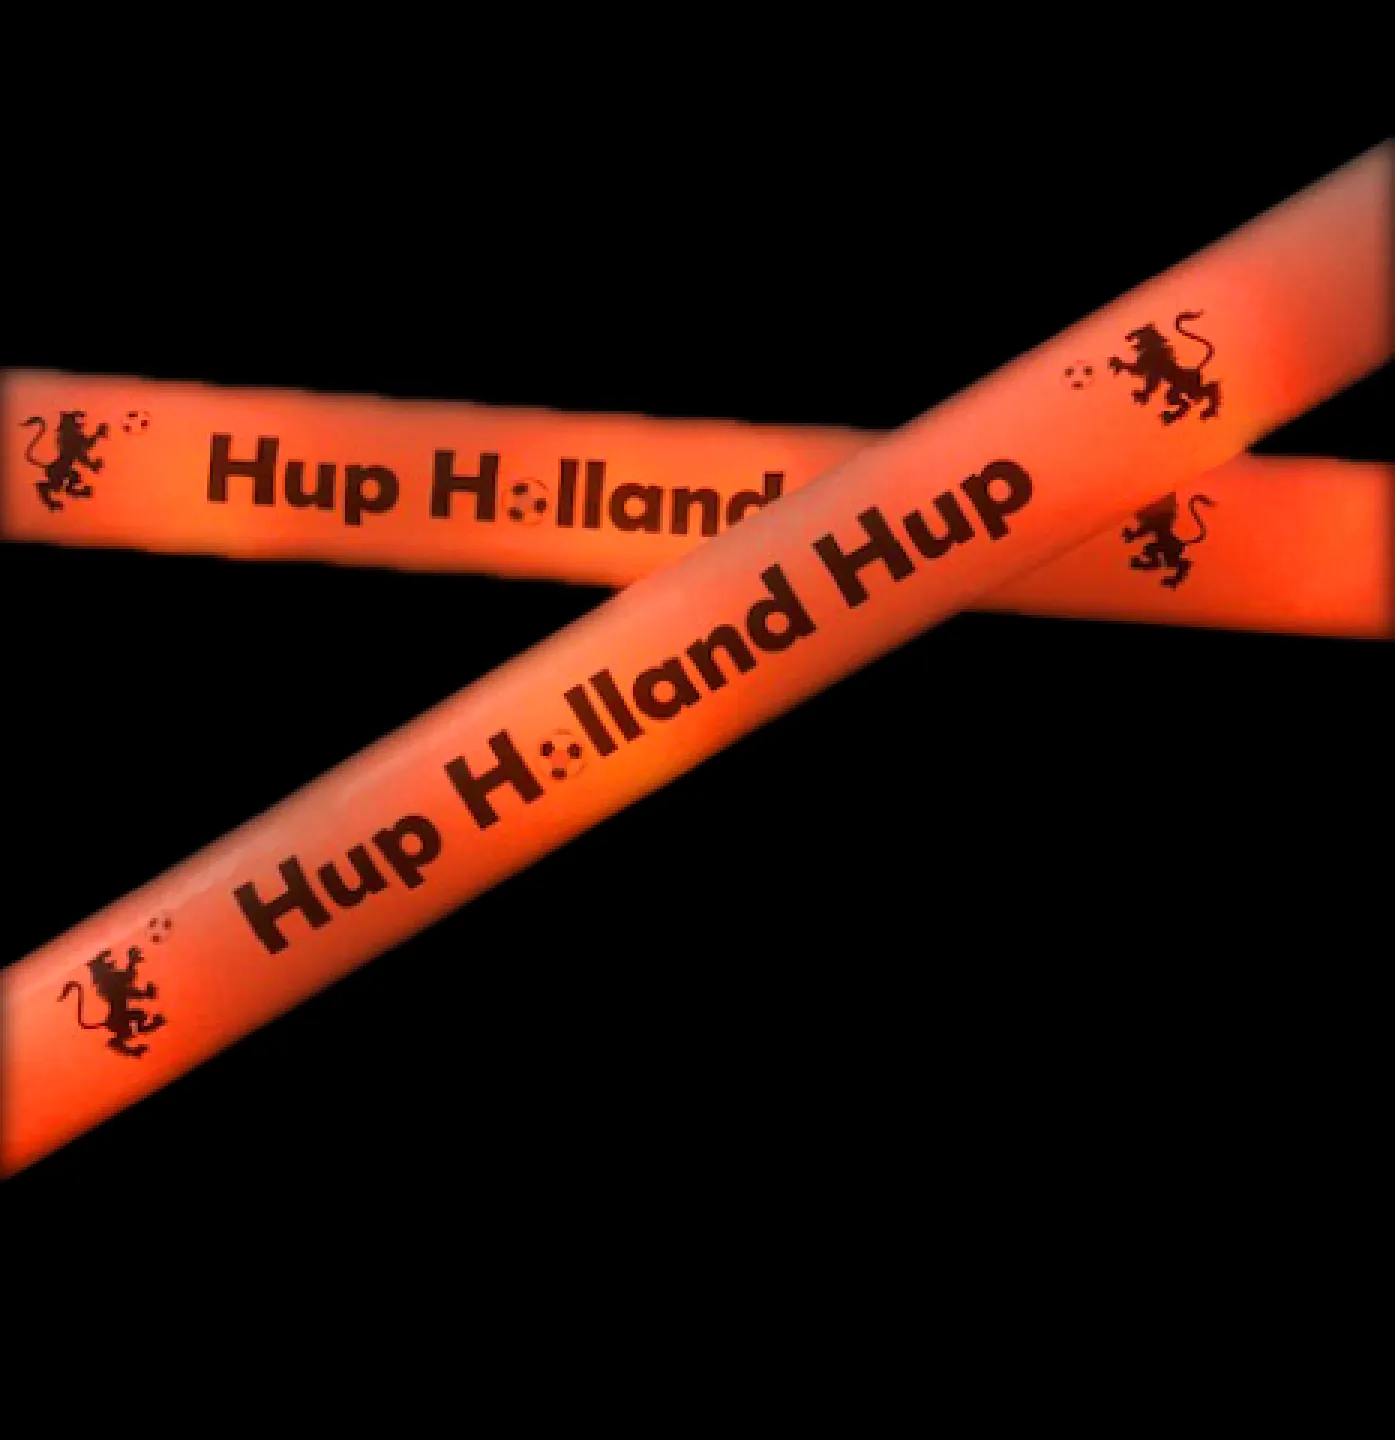 Hup Holland Hup foam sticks.